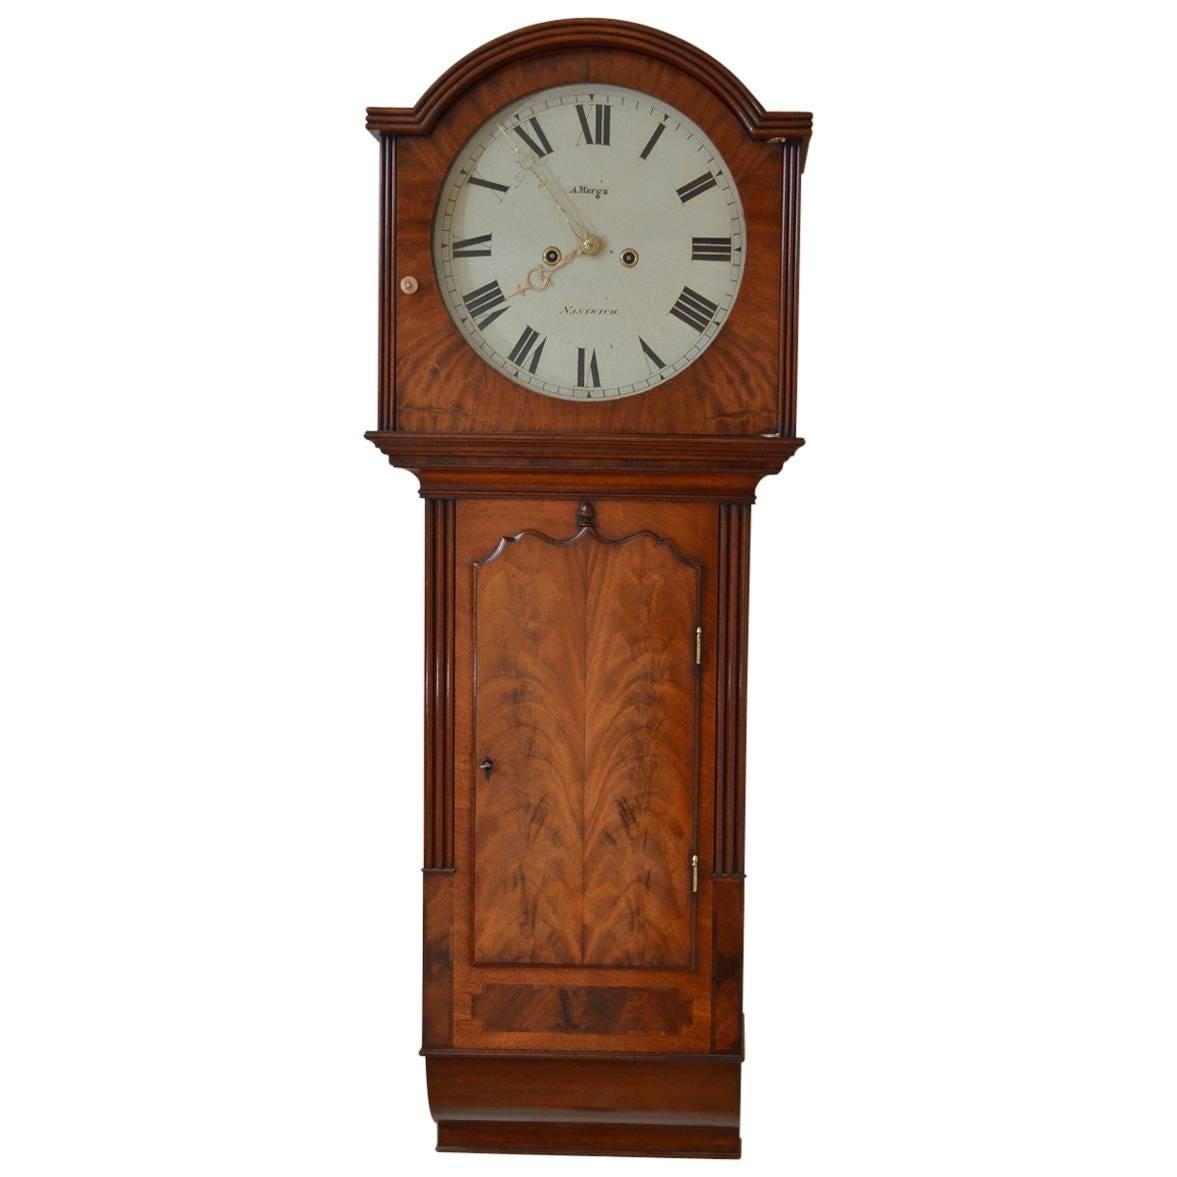 Fine and Unusual George III Wall Clock by A. Merga